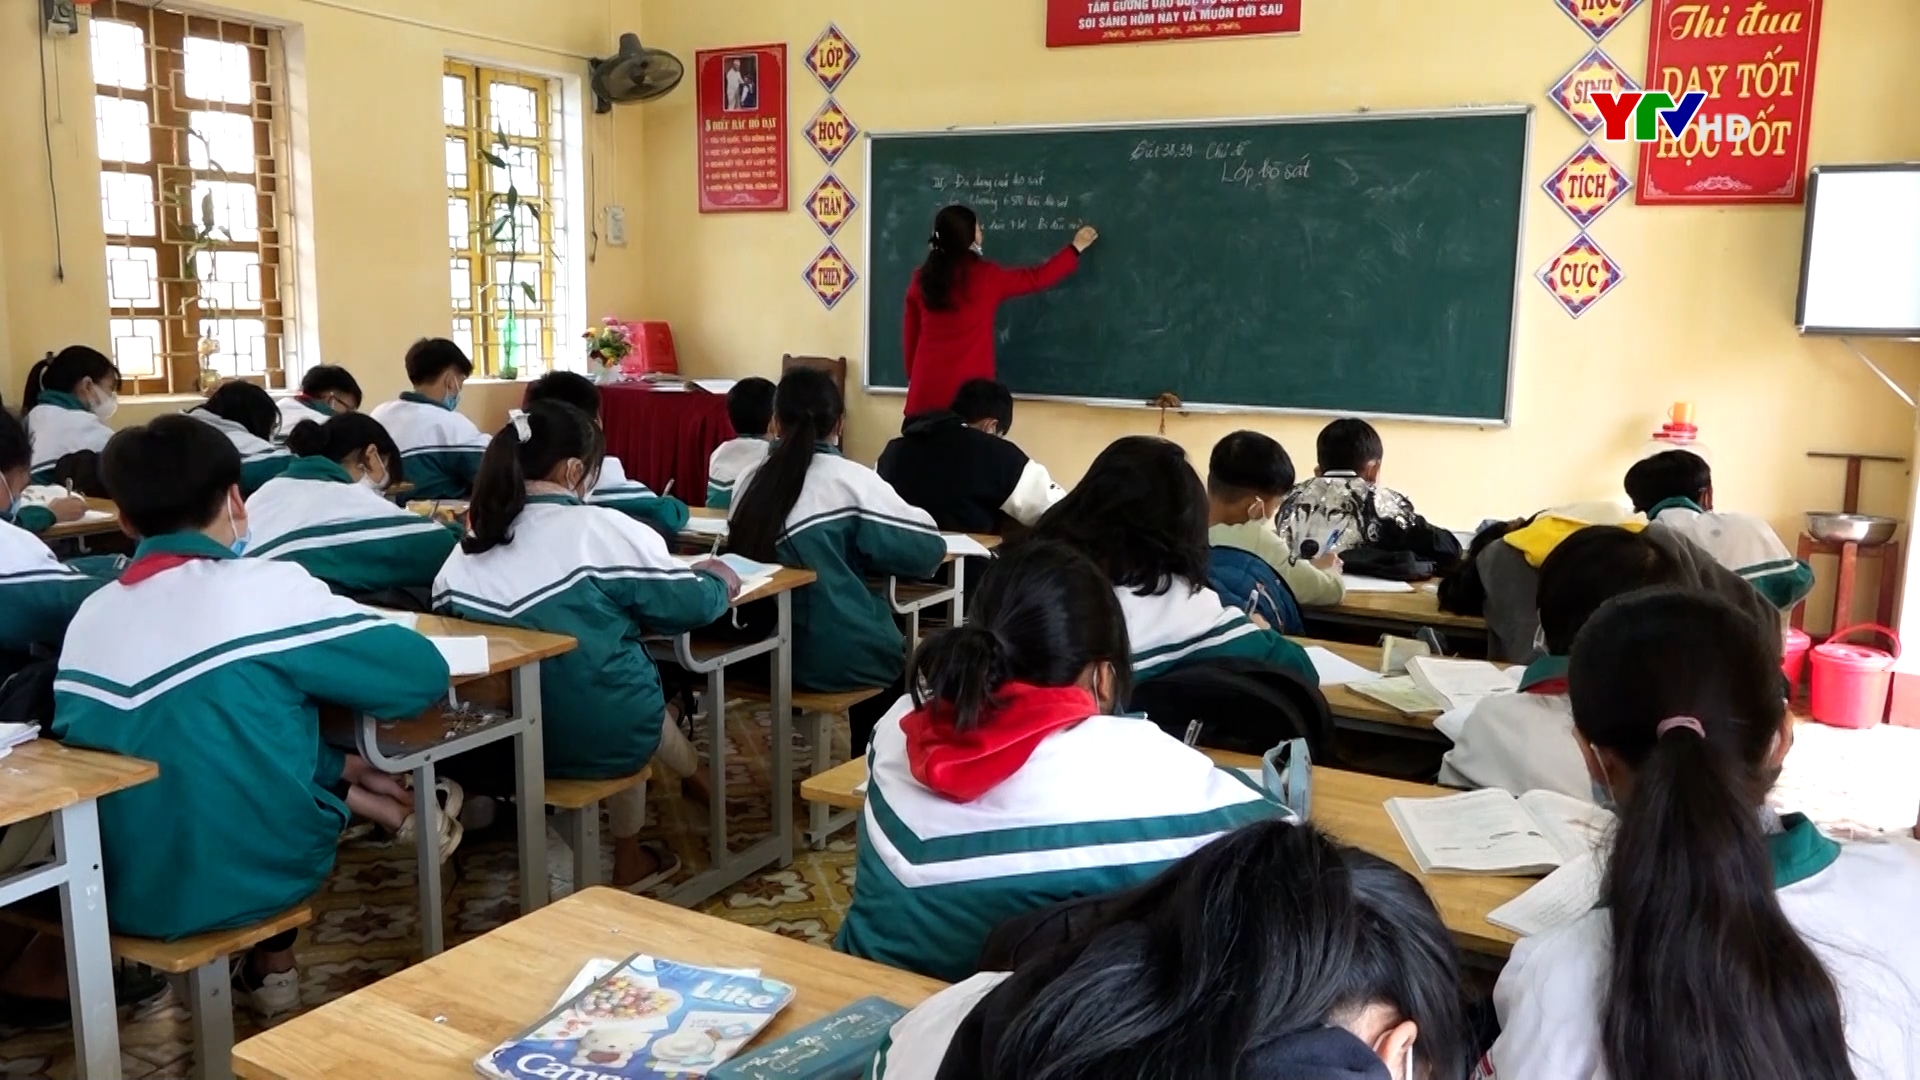 Các trường học huyện Trấn Yên thích ứng linh hoạt với tình hình dịch bệnh COVID - 19